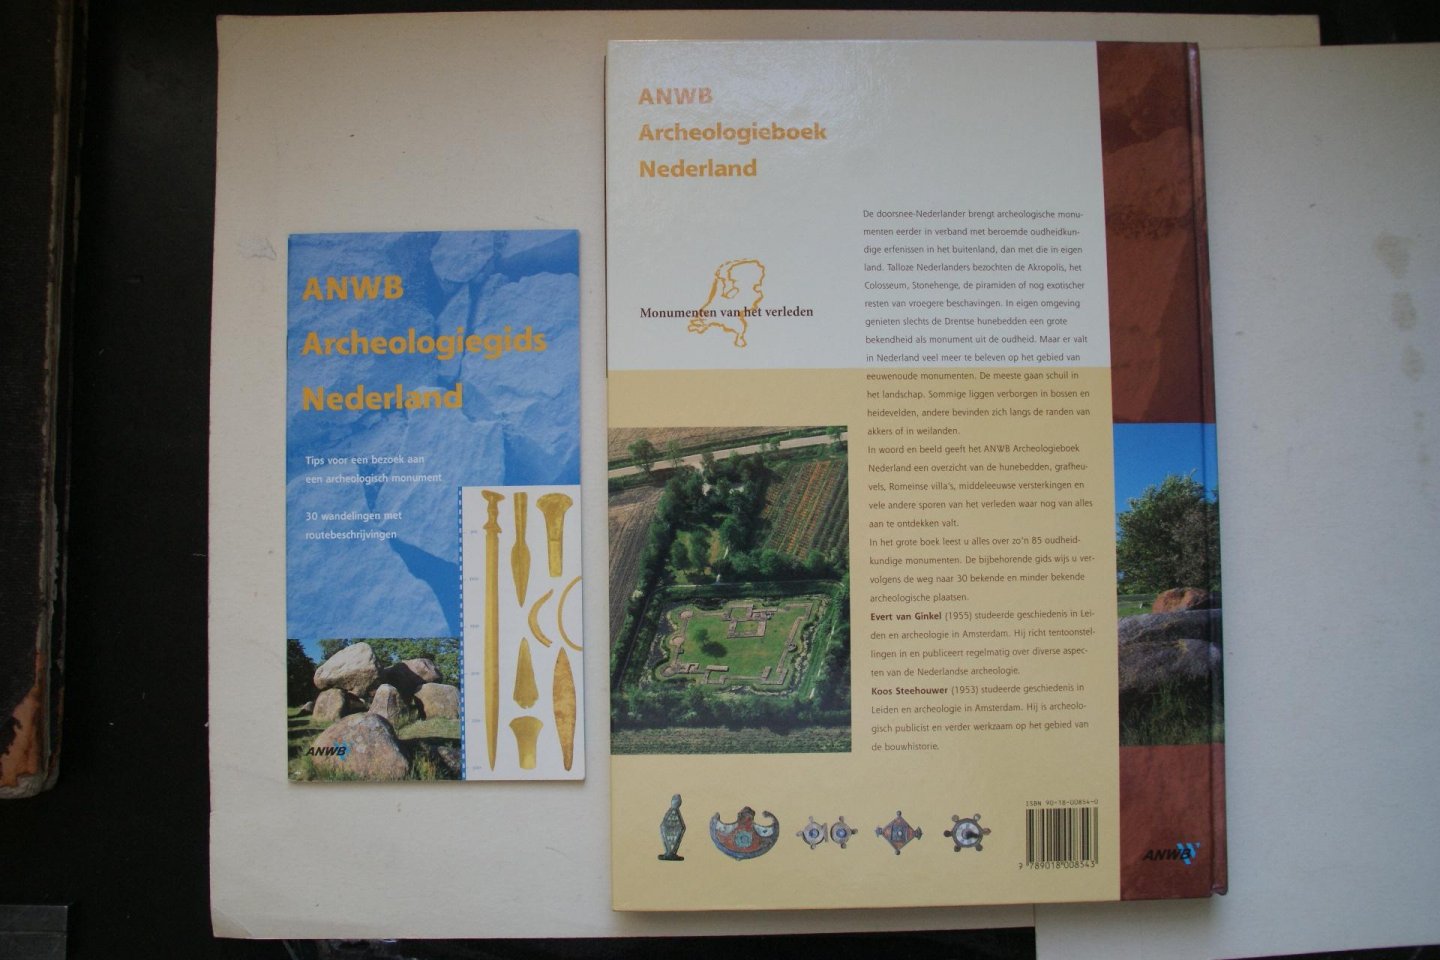 Evert van Ginkel  ; Steehouwer, Koos - ANWB  Archeologieboek Nederland  compleet met Boekje waarin 30 wandelingen staan met routebeschrijvingen